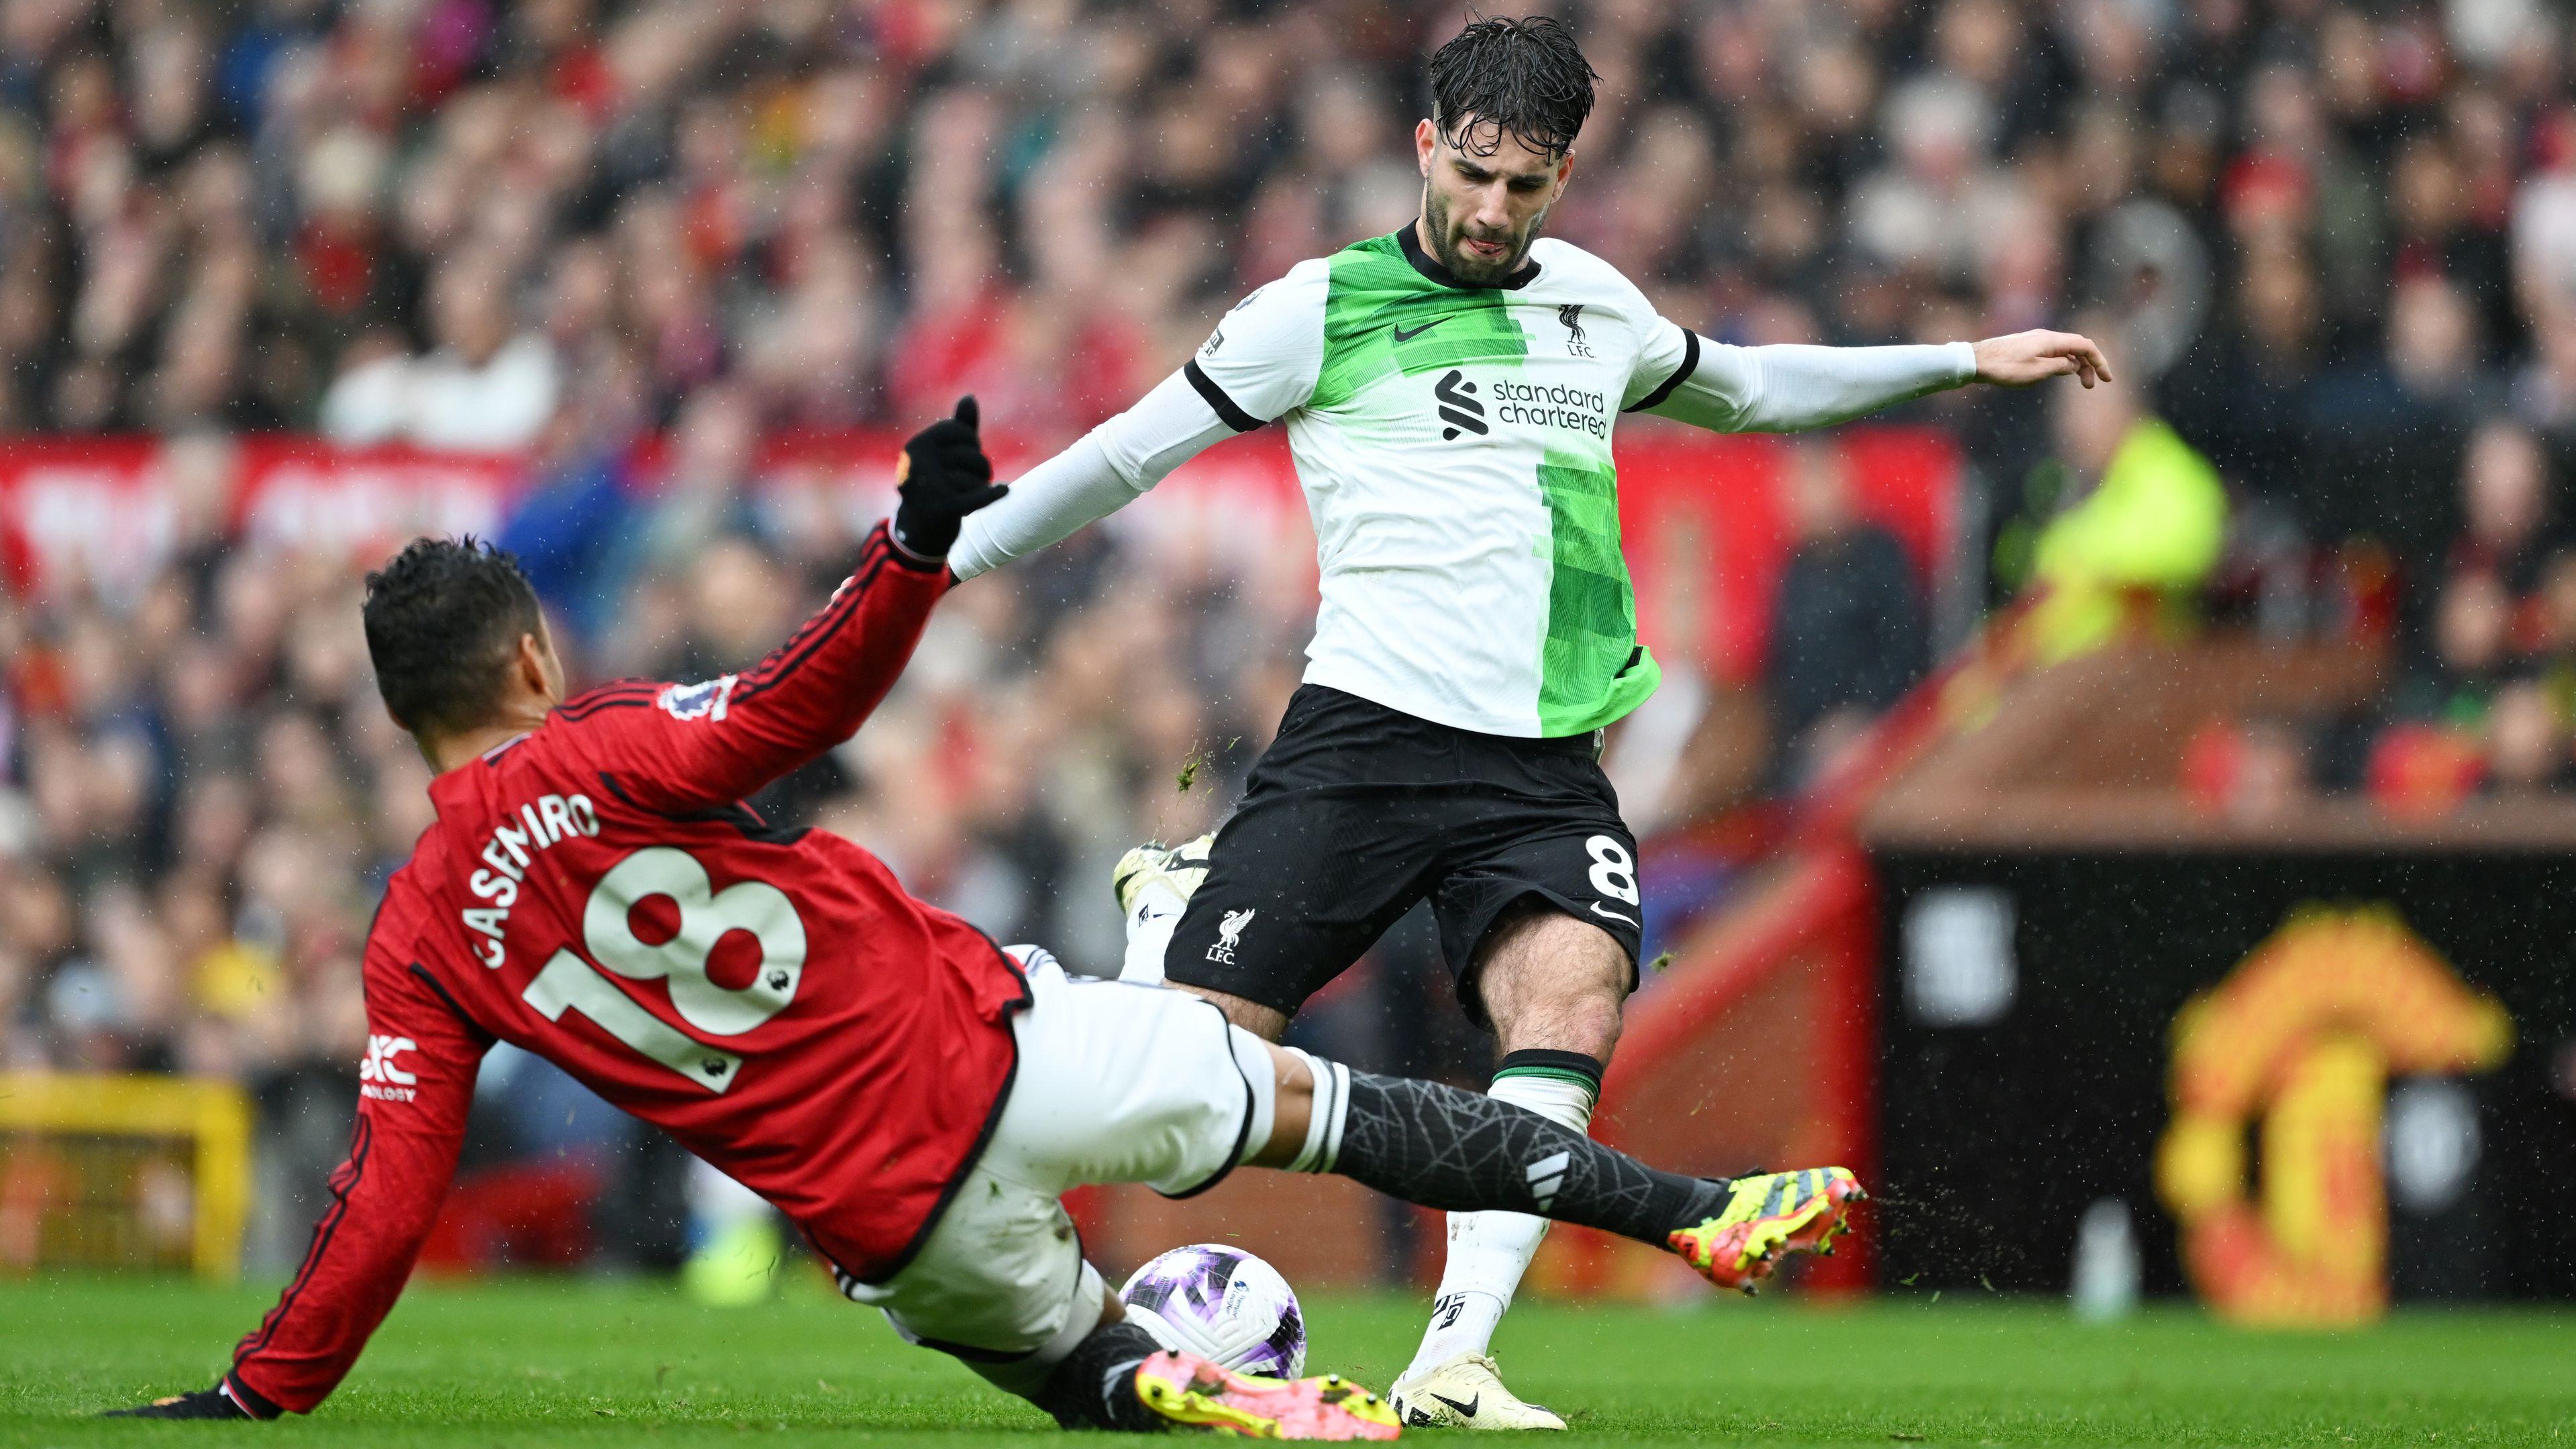 Szoboszlai Dominik az első félidőben remekül futballozott a Manchester United otthonában, ám hiába került előnybe a Liverpool, végül csak egy pontot szerzett az Old Traffordon